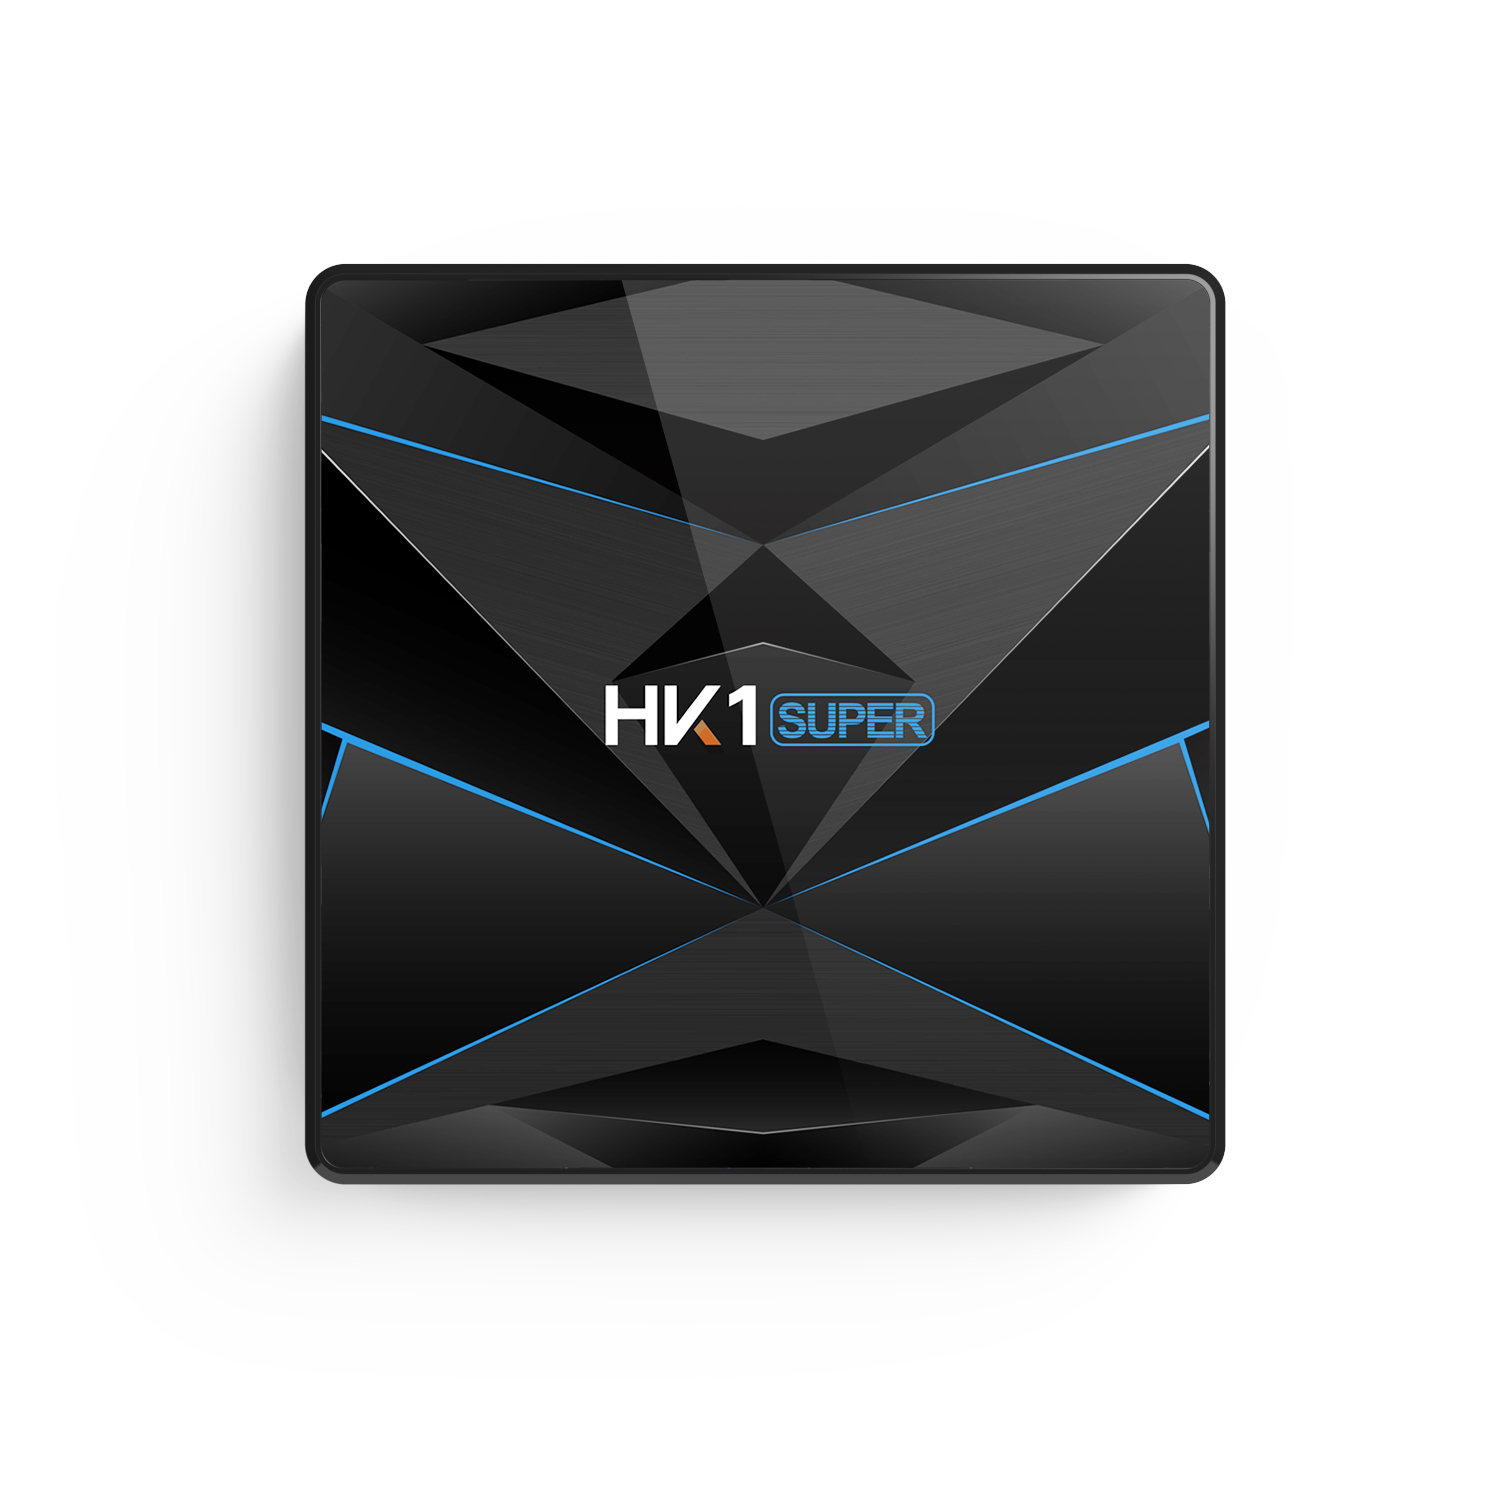 

HK1 Super RK3318 4 ГБ RAM 128 ГБ ROM 5G WIFI Bluetooth 4.0 Android 9.0 4K ТВ Коробка